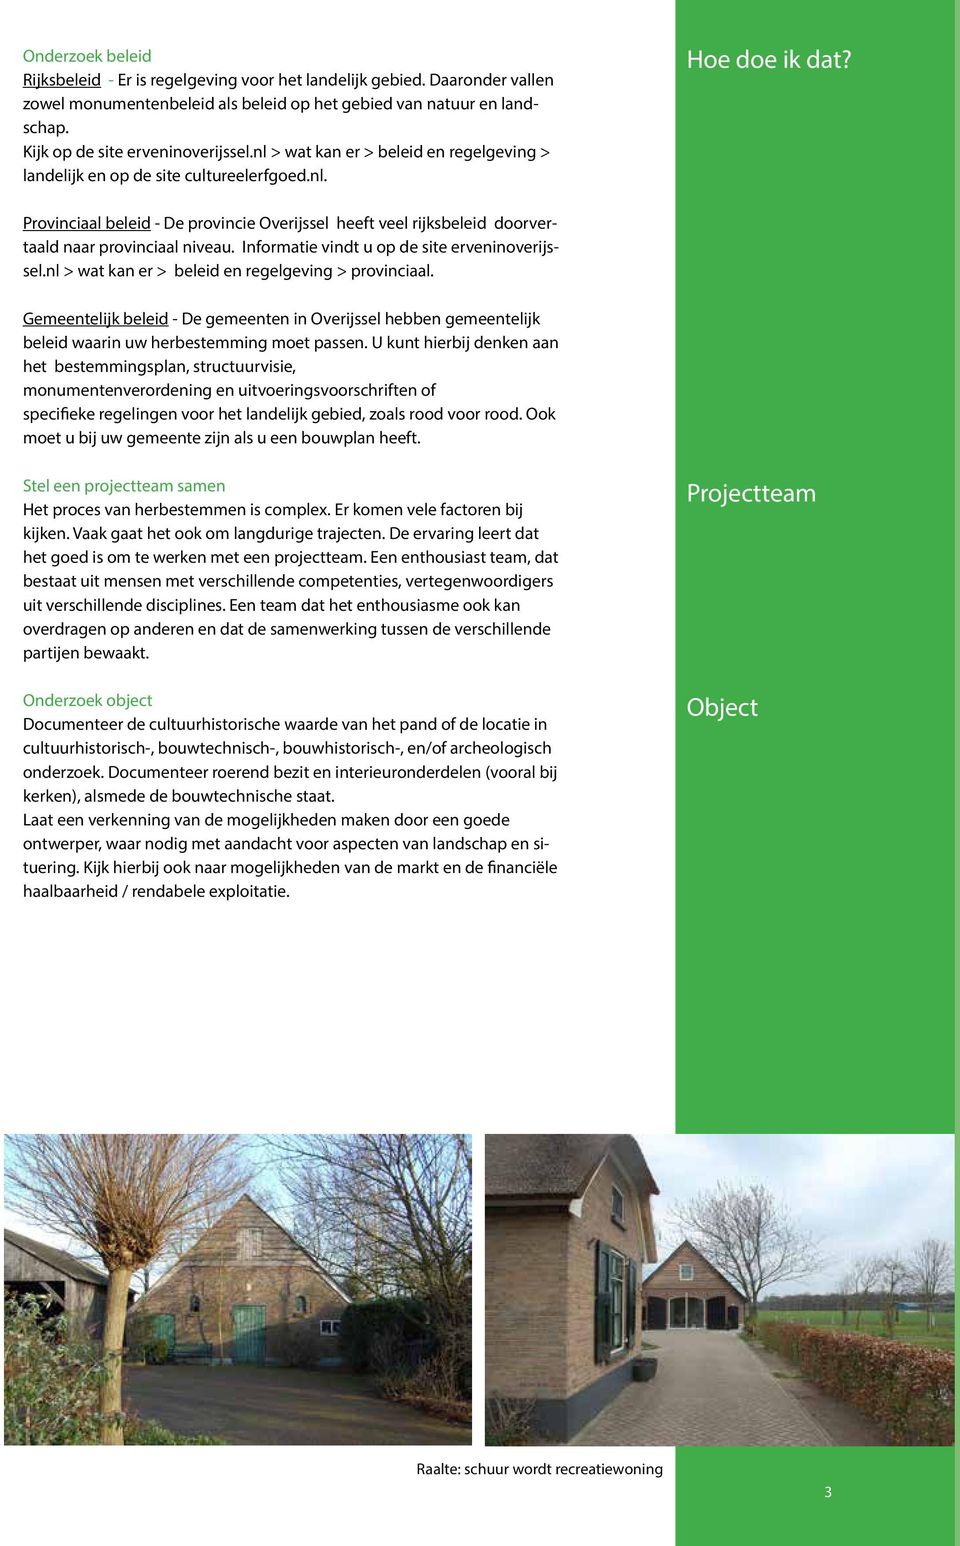 Provinciaal beleid - De provincie Overijssel heeft veel rijksbeleid doorvertaald naar provinciaal niveau. Informatie vindt u op de site erveninoverijssel.